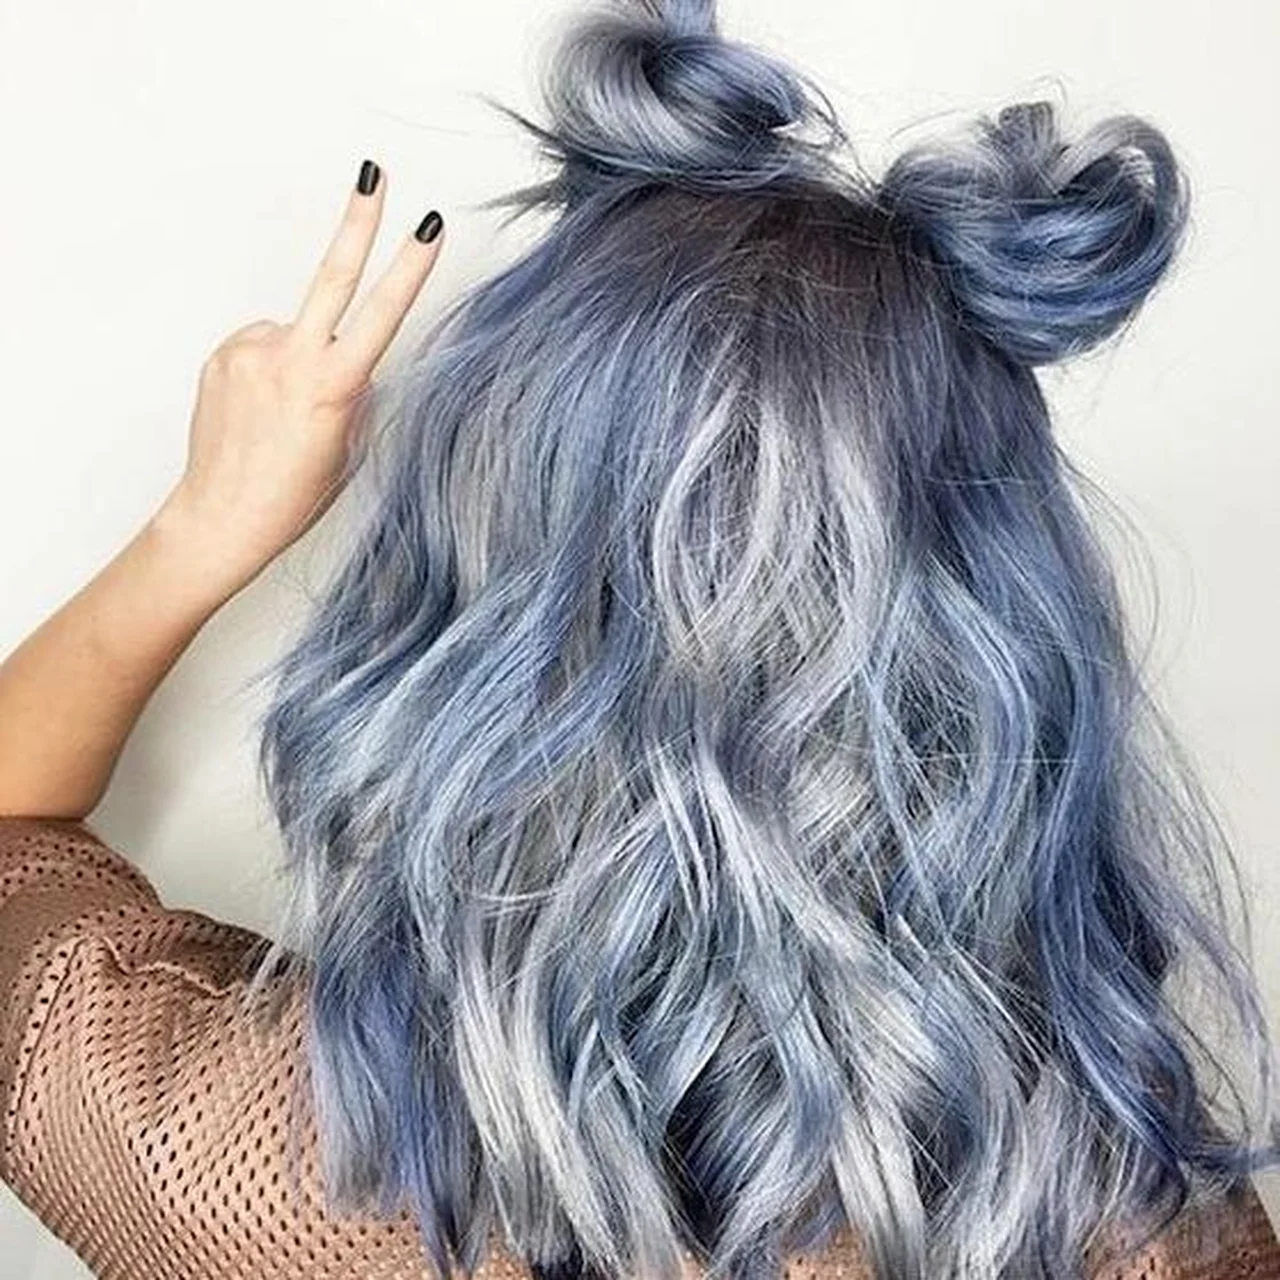 Włosy w niebieskich odcieniach